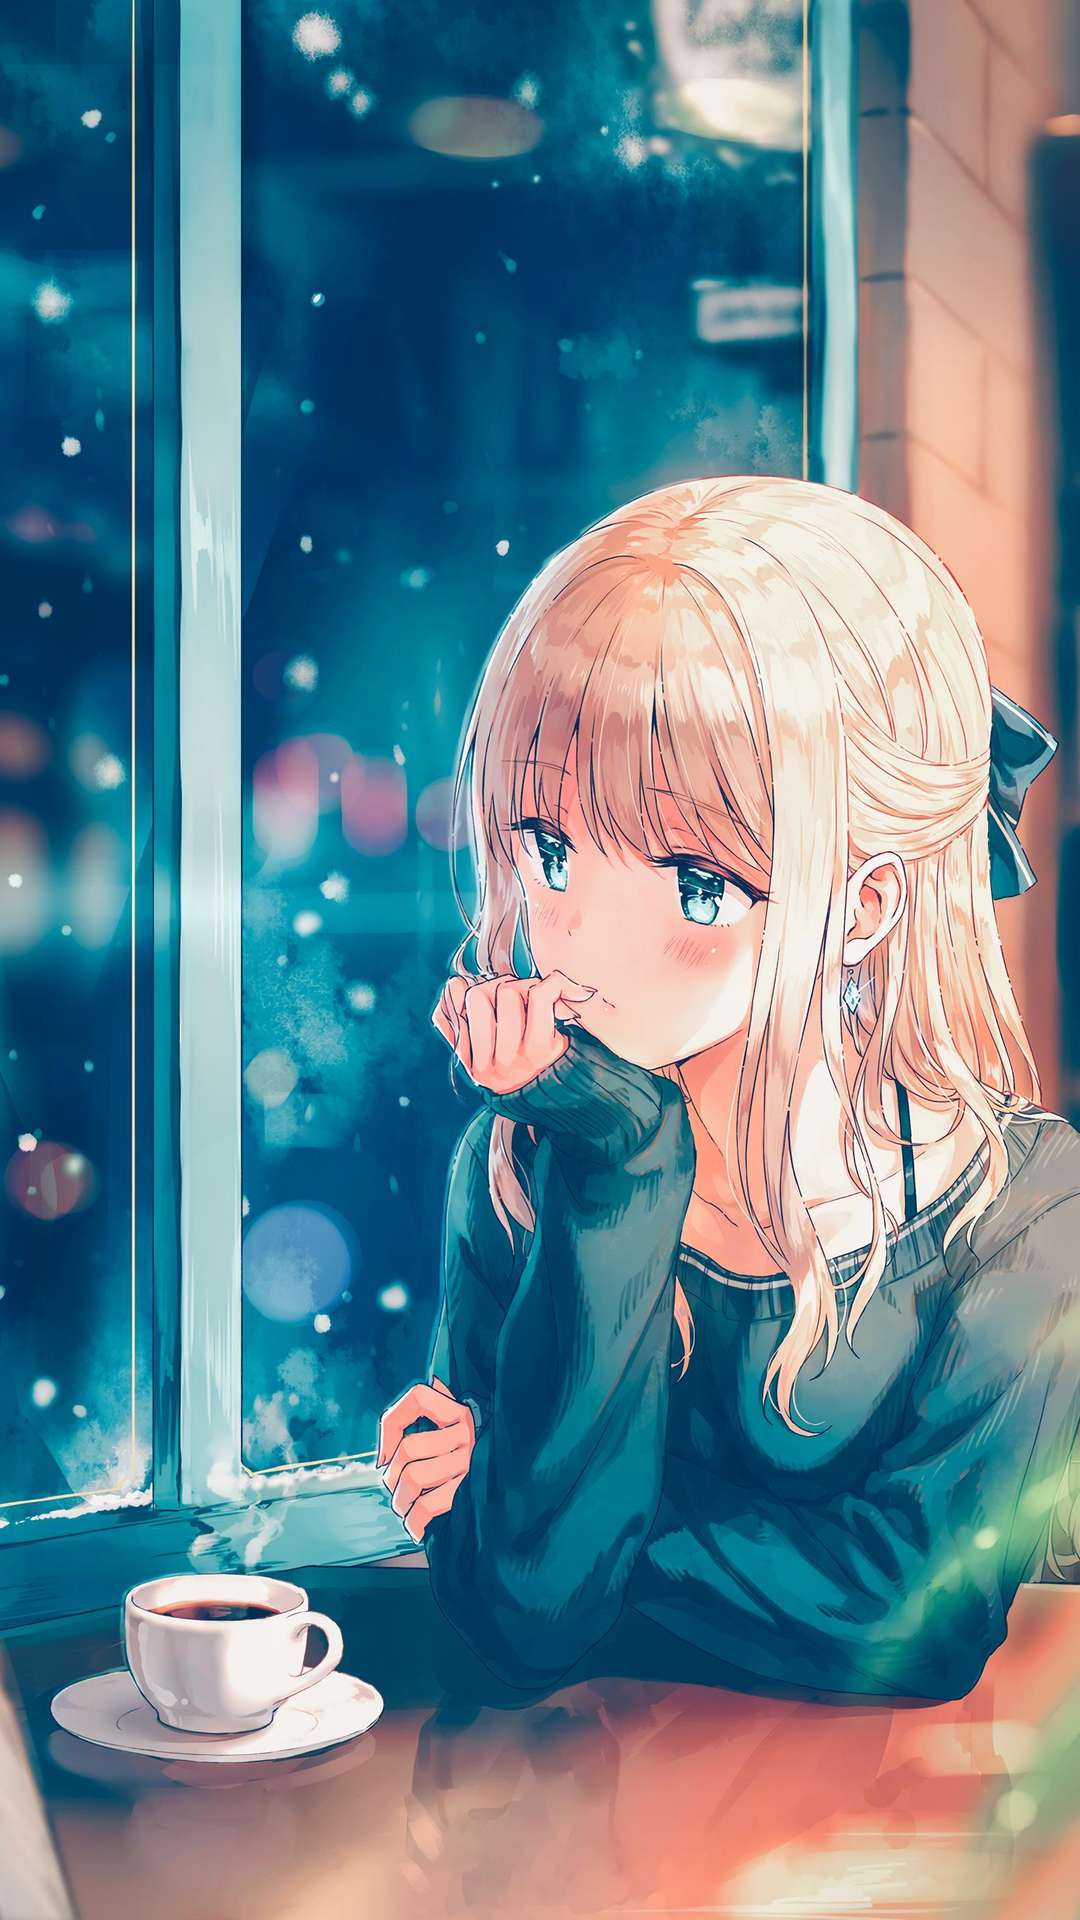 Anime Sad Wallpapers on WallpaperDog